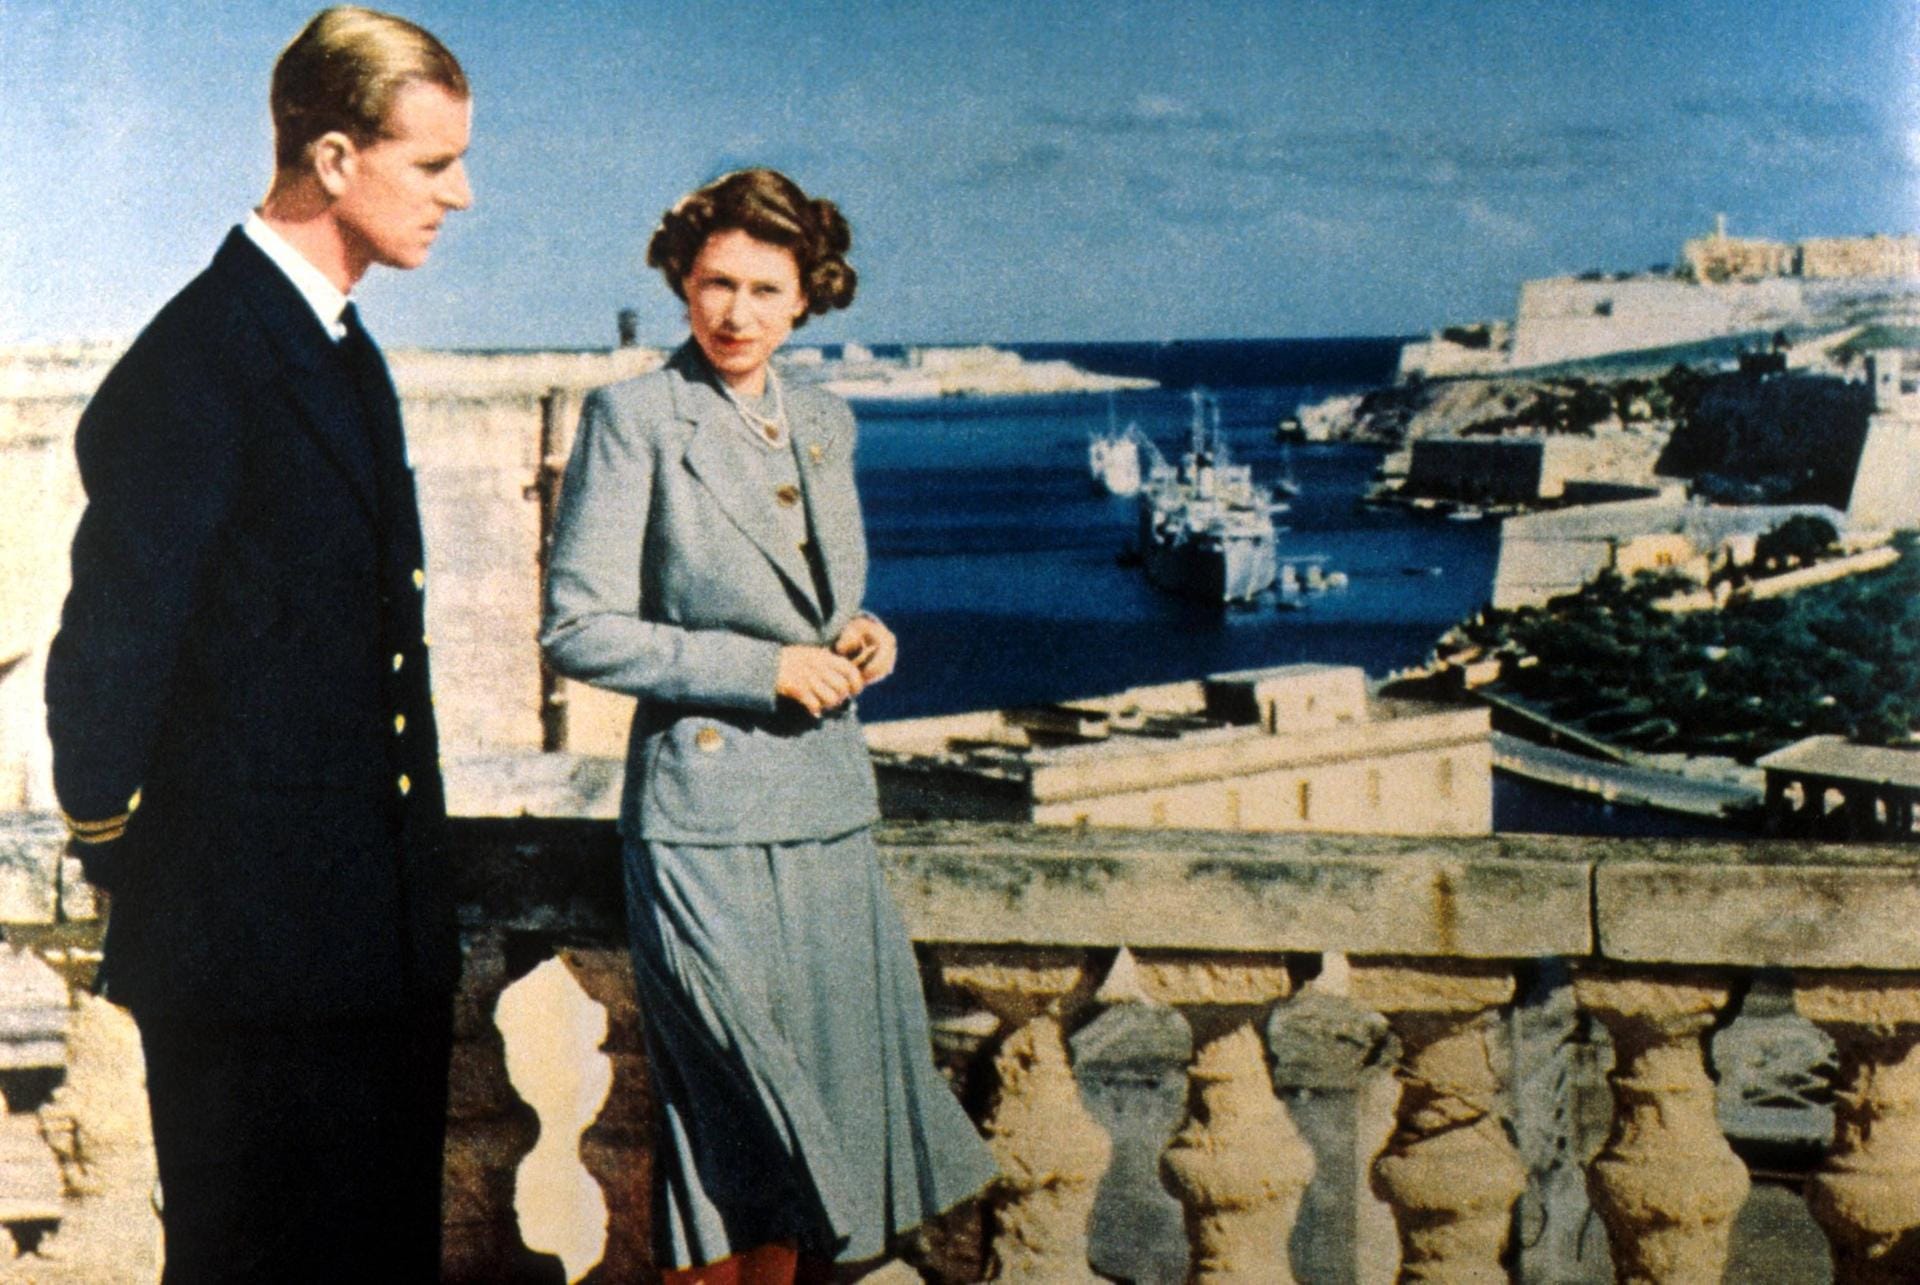 Philip und Elizabeth auf Malta: Dort verbrachten die beiden Ende der 40er und Anfang der 50er-Jahre viel Zeit, weil der Duke of Edinburgh dort als Offizier der Royal Navy stationiert war. Eine besonders glückliche Zeit für das Paar.